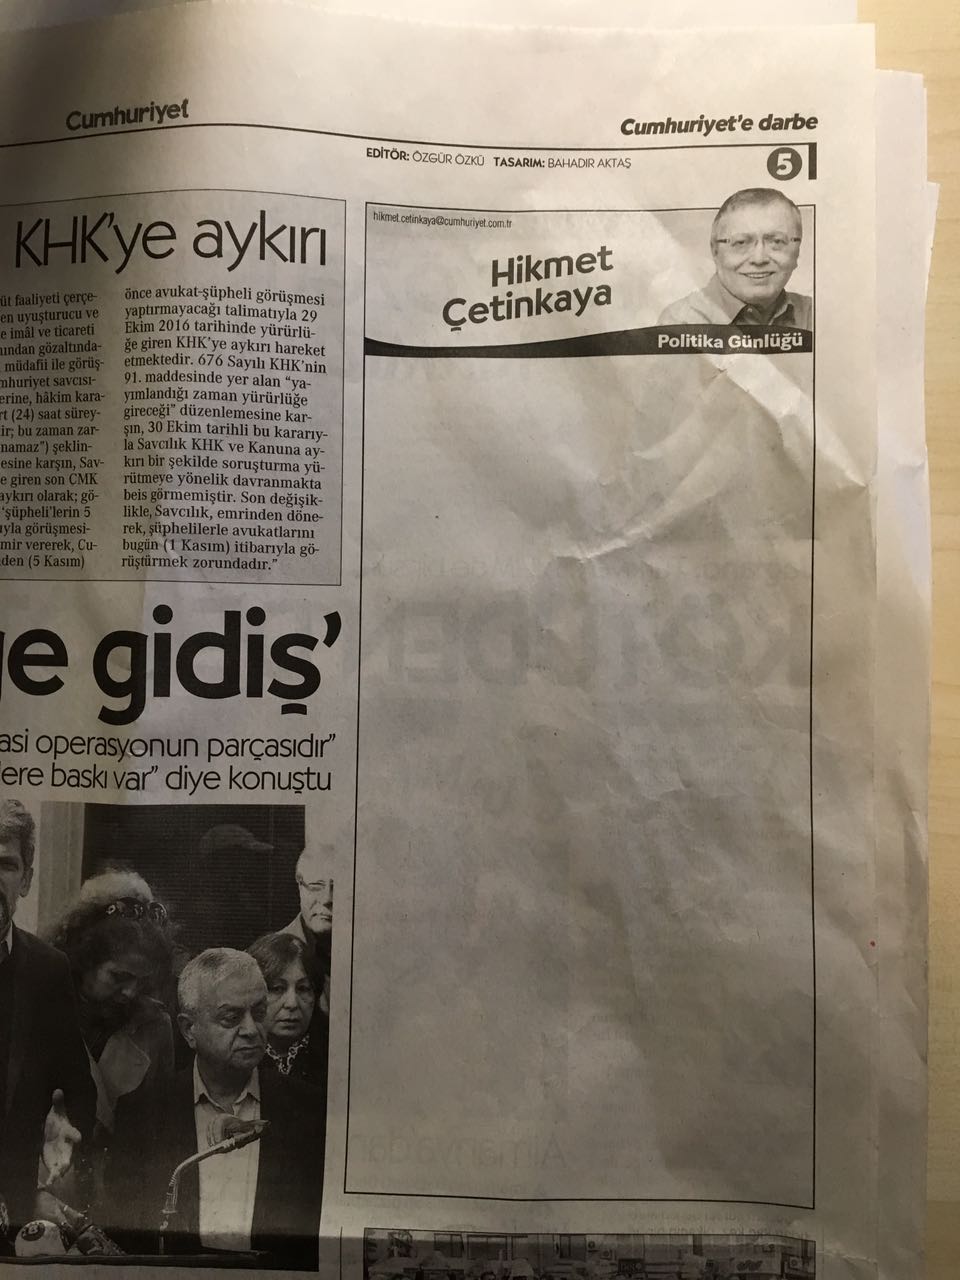 Cumhuriyet journalists' columns left empty after their arrest